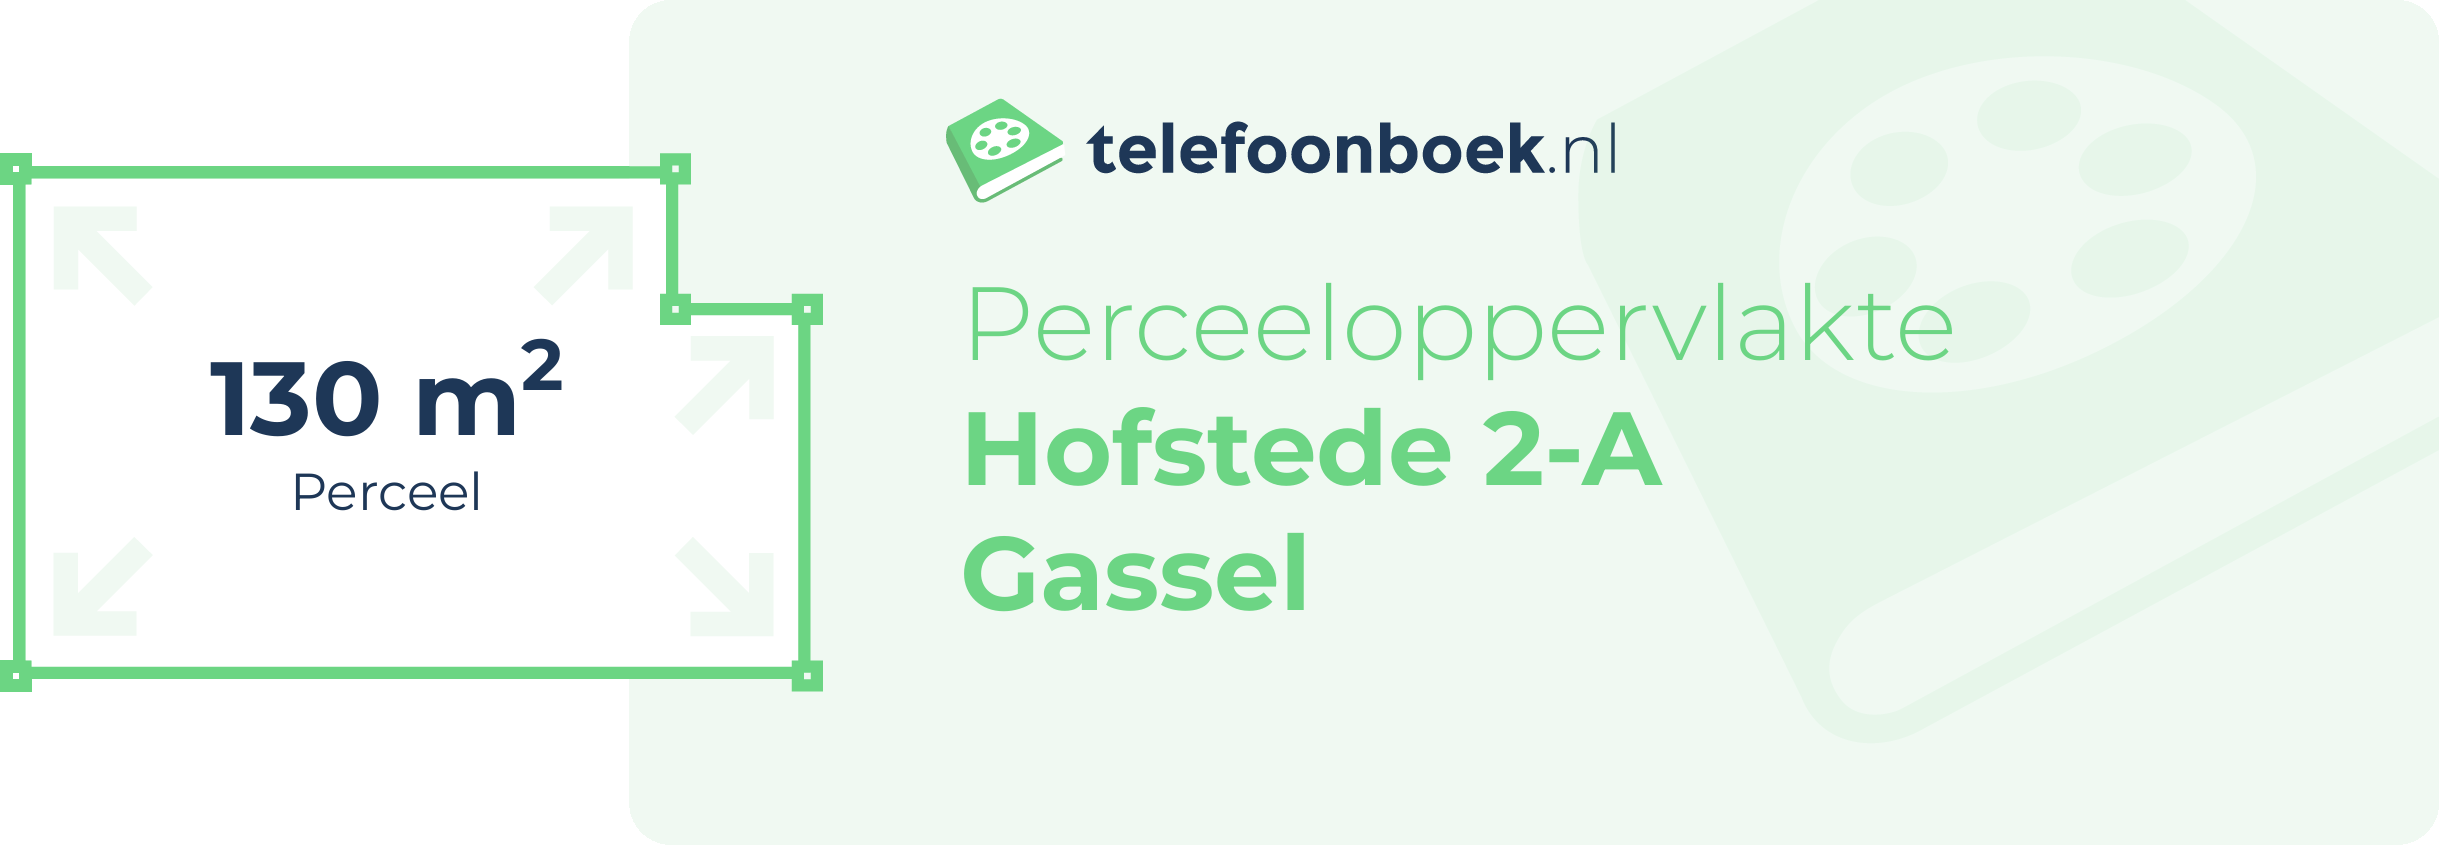 Perceeloppervlakte Hofstede 2-A Gassel